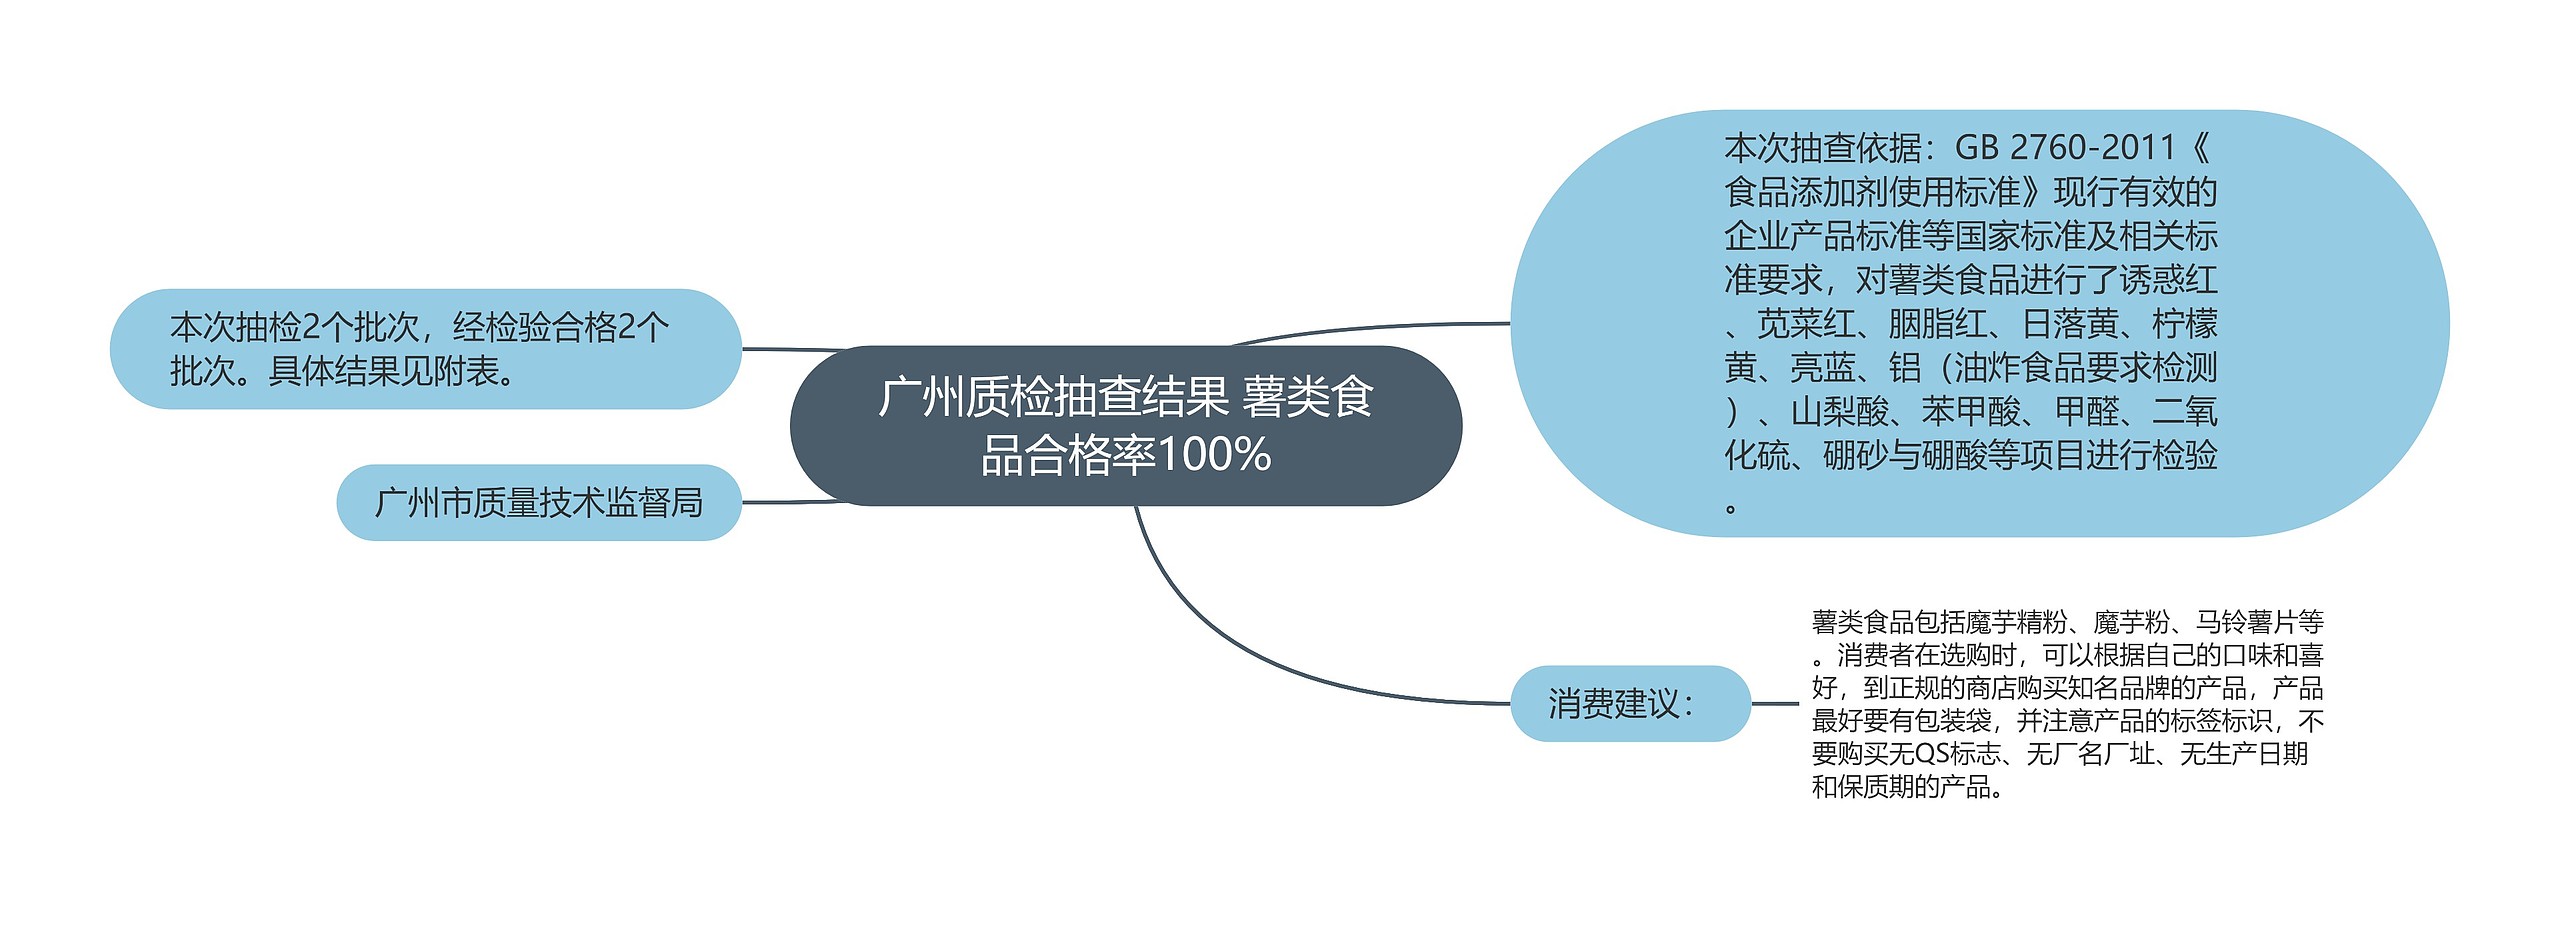 广州质检抽查结果 薯类食品合格率100%思维导图